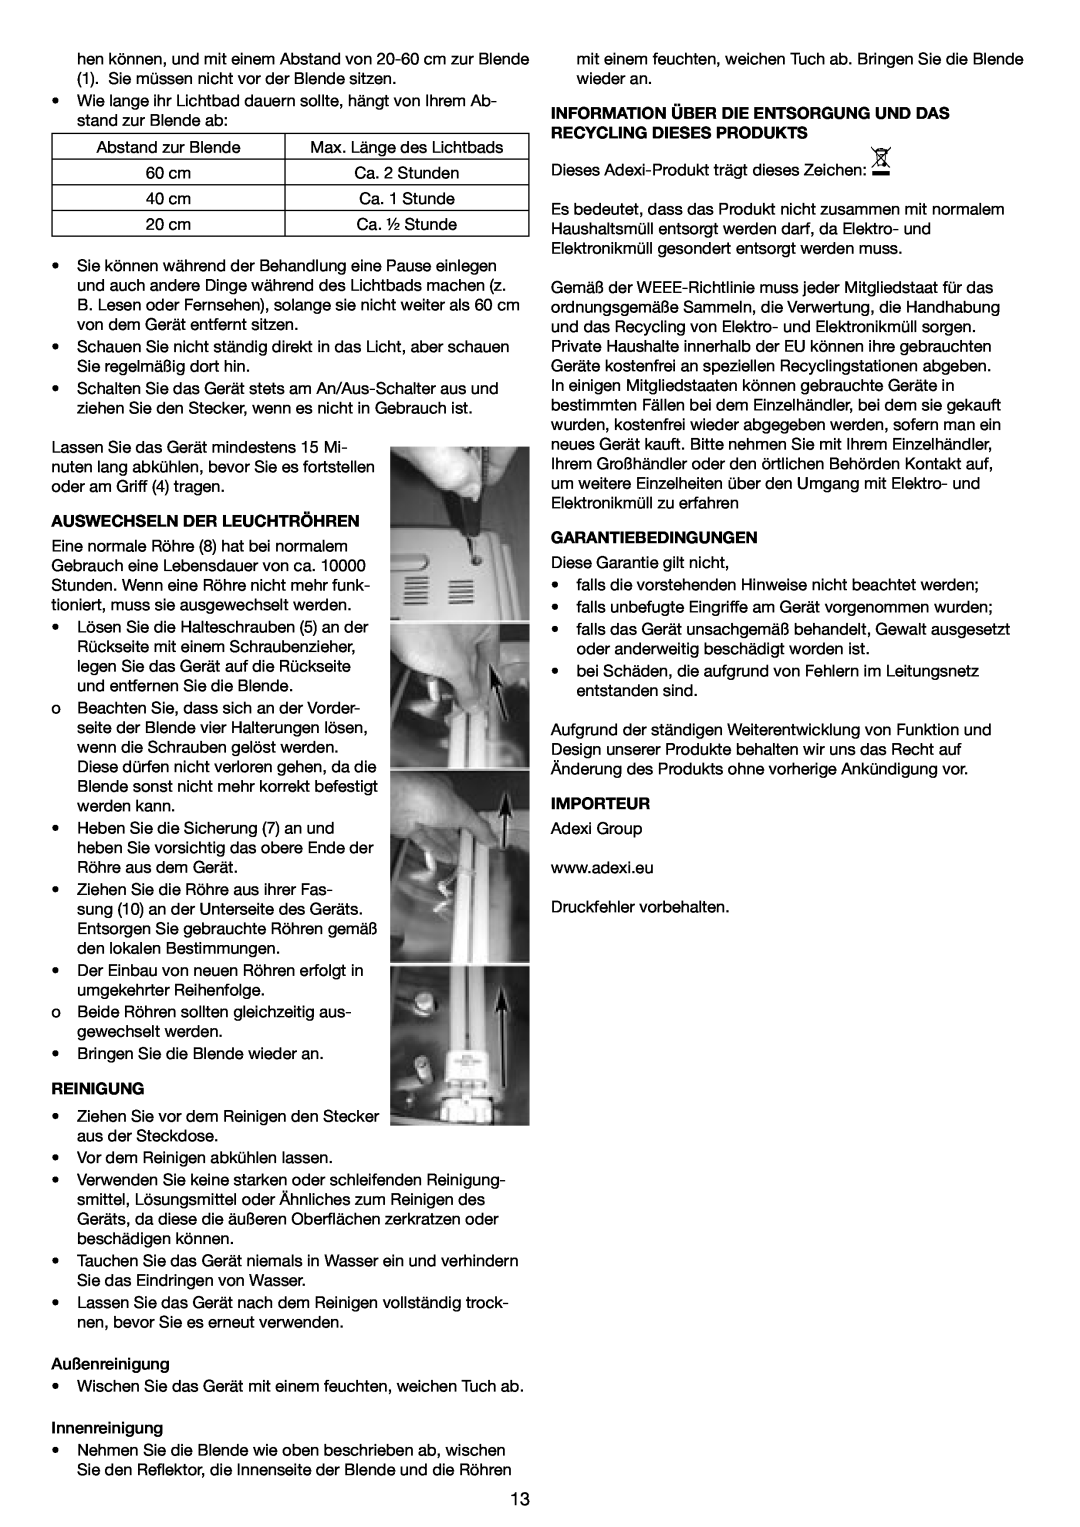 Melissa 637-001 manual Auswechseln Der Leuchtröhren, Reinigung, Garantiebedingungen, Importeur 